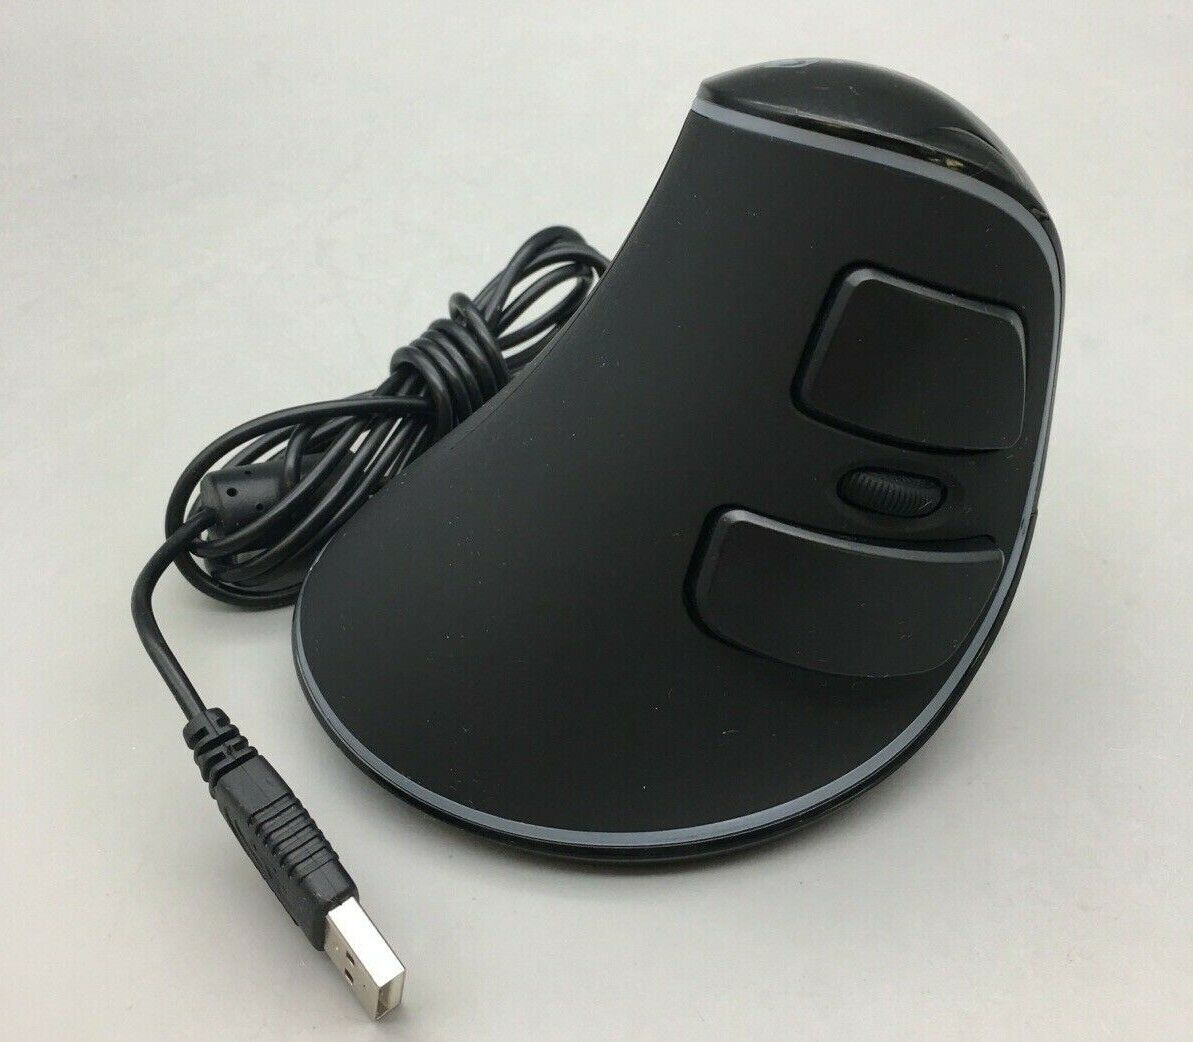 J-Tech Digital Ergonomic Vertical USB Mouse with Palm Rest - C06